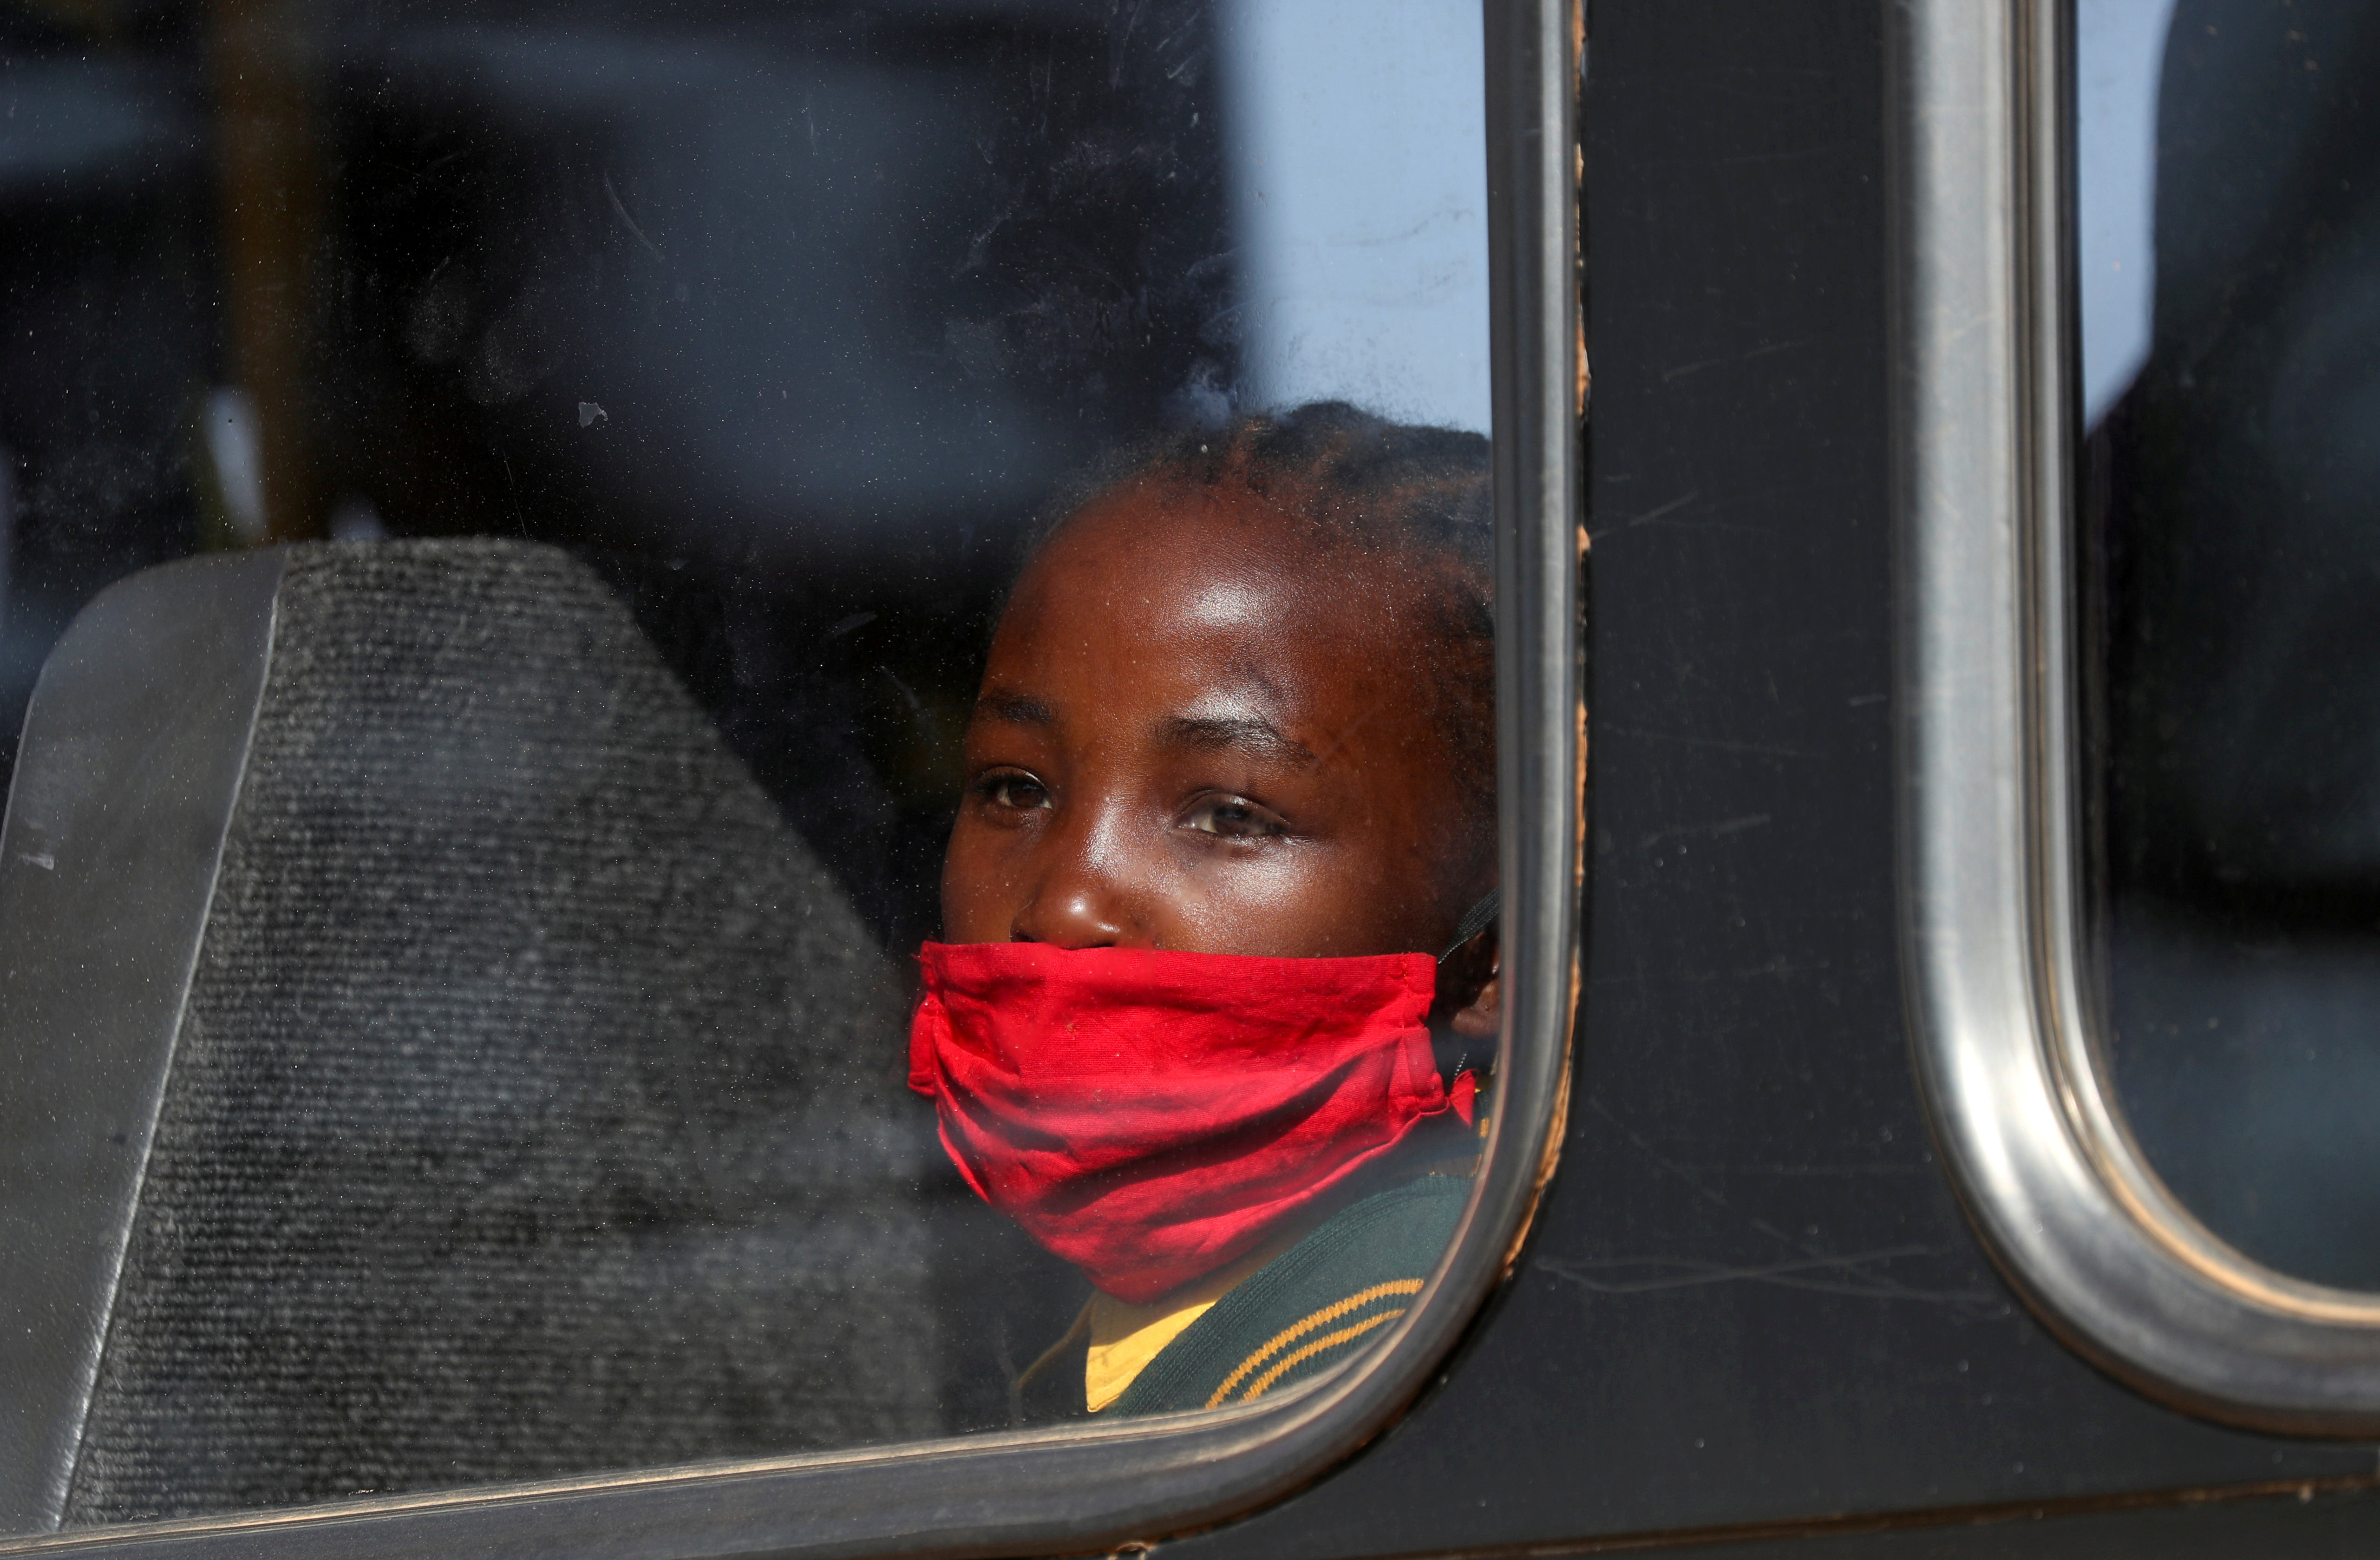 FOTO DE ARCHIVO: Una niña con una máscara protectora mira a través de la ventana de un autobús en Eikenhof, al sur de Johannesburgo, Sudáfrica, 24 de agosto de 2020. REUTERS / Siphiwe Sibeko /